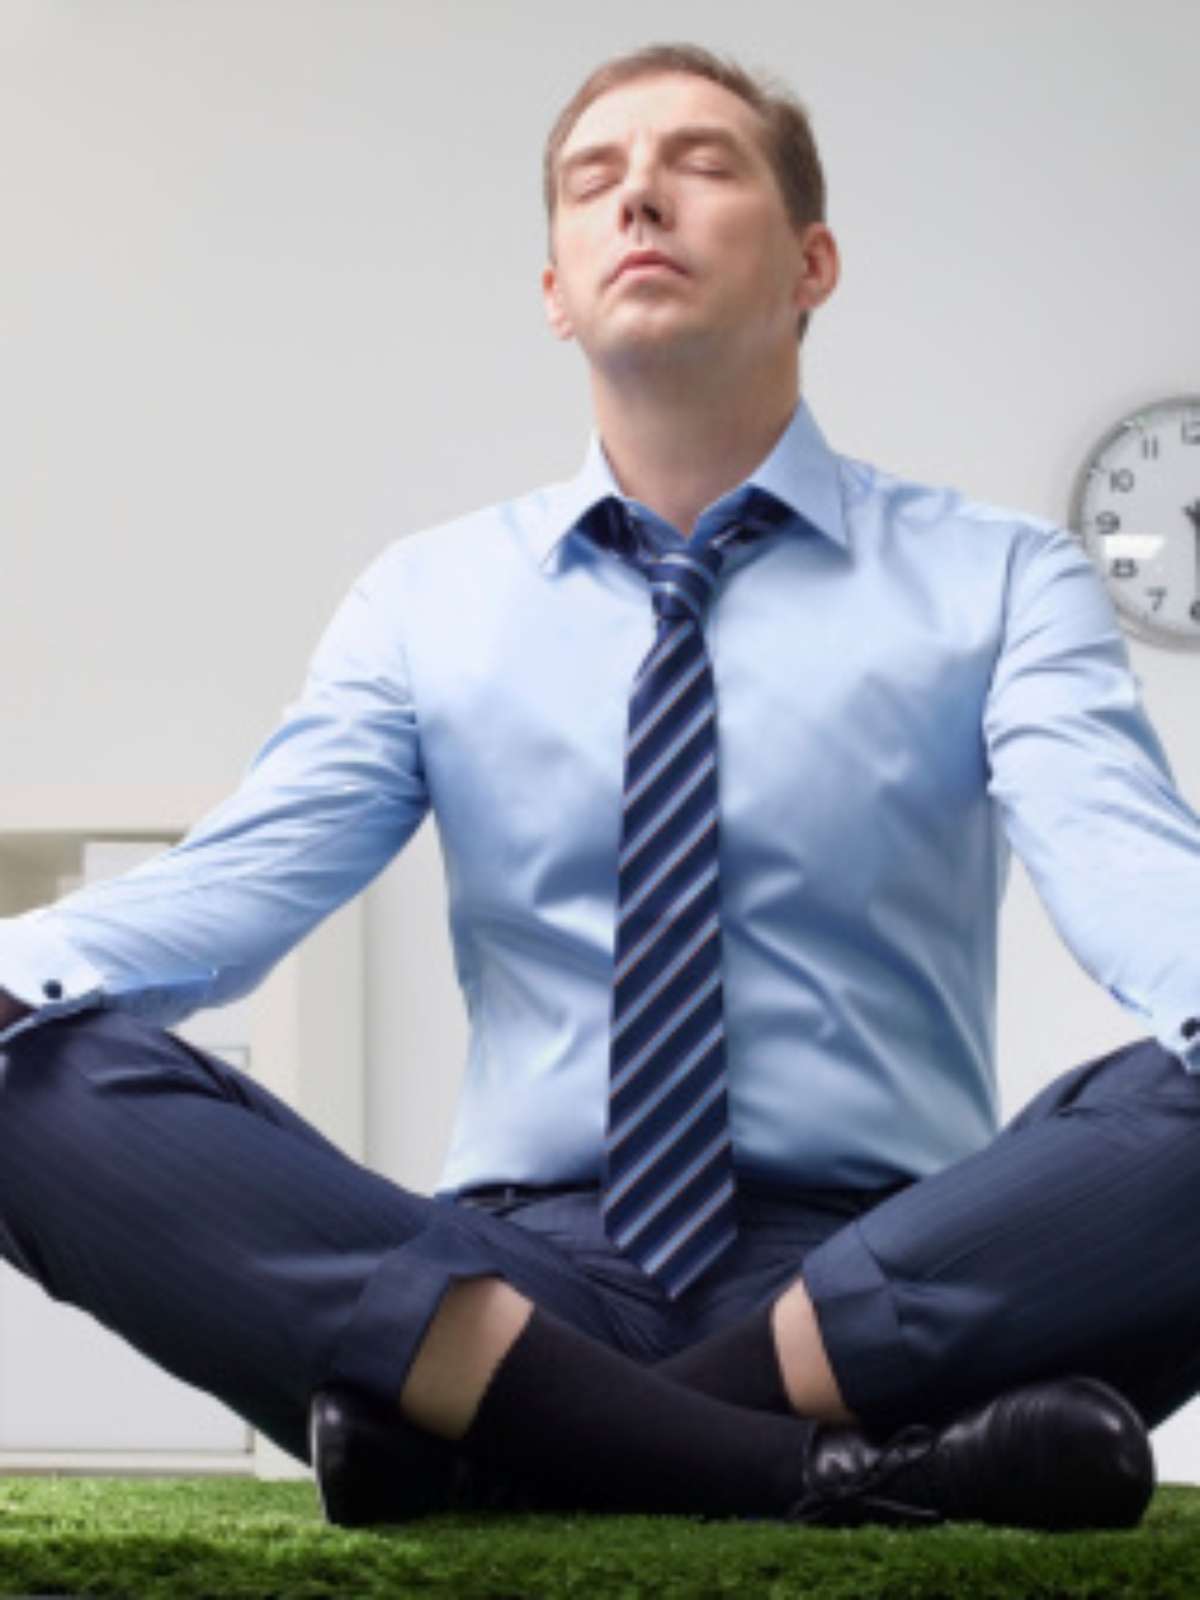 Homens na ioga: conheça 5 motivos para apostar na prática